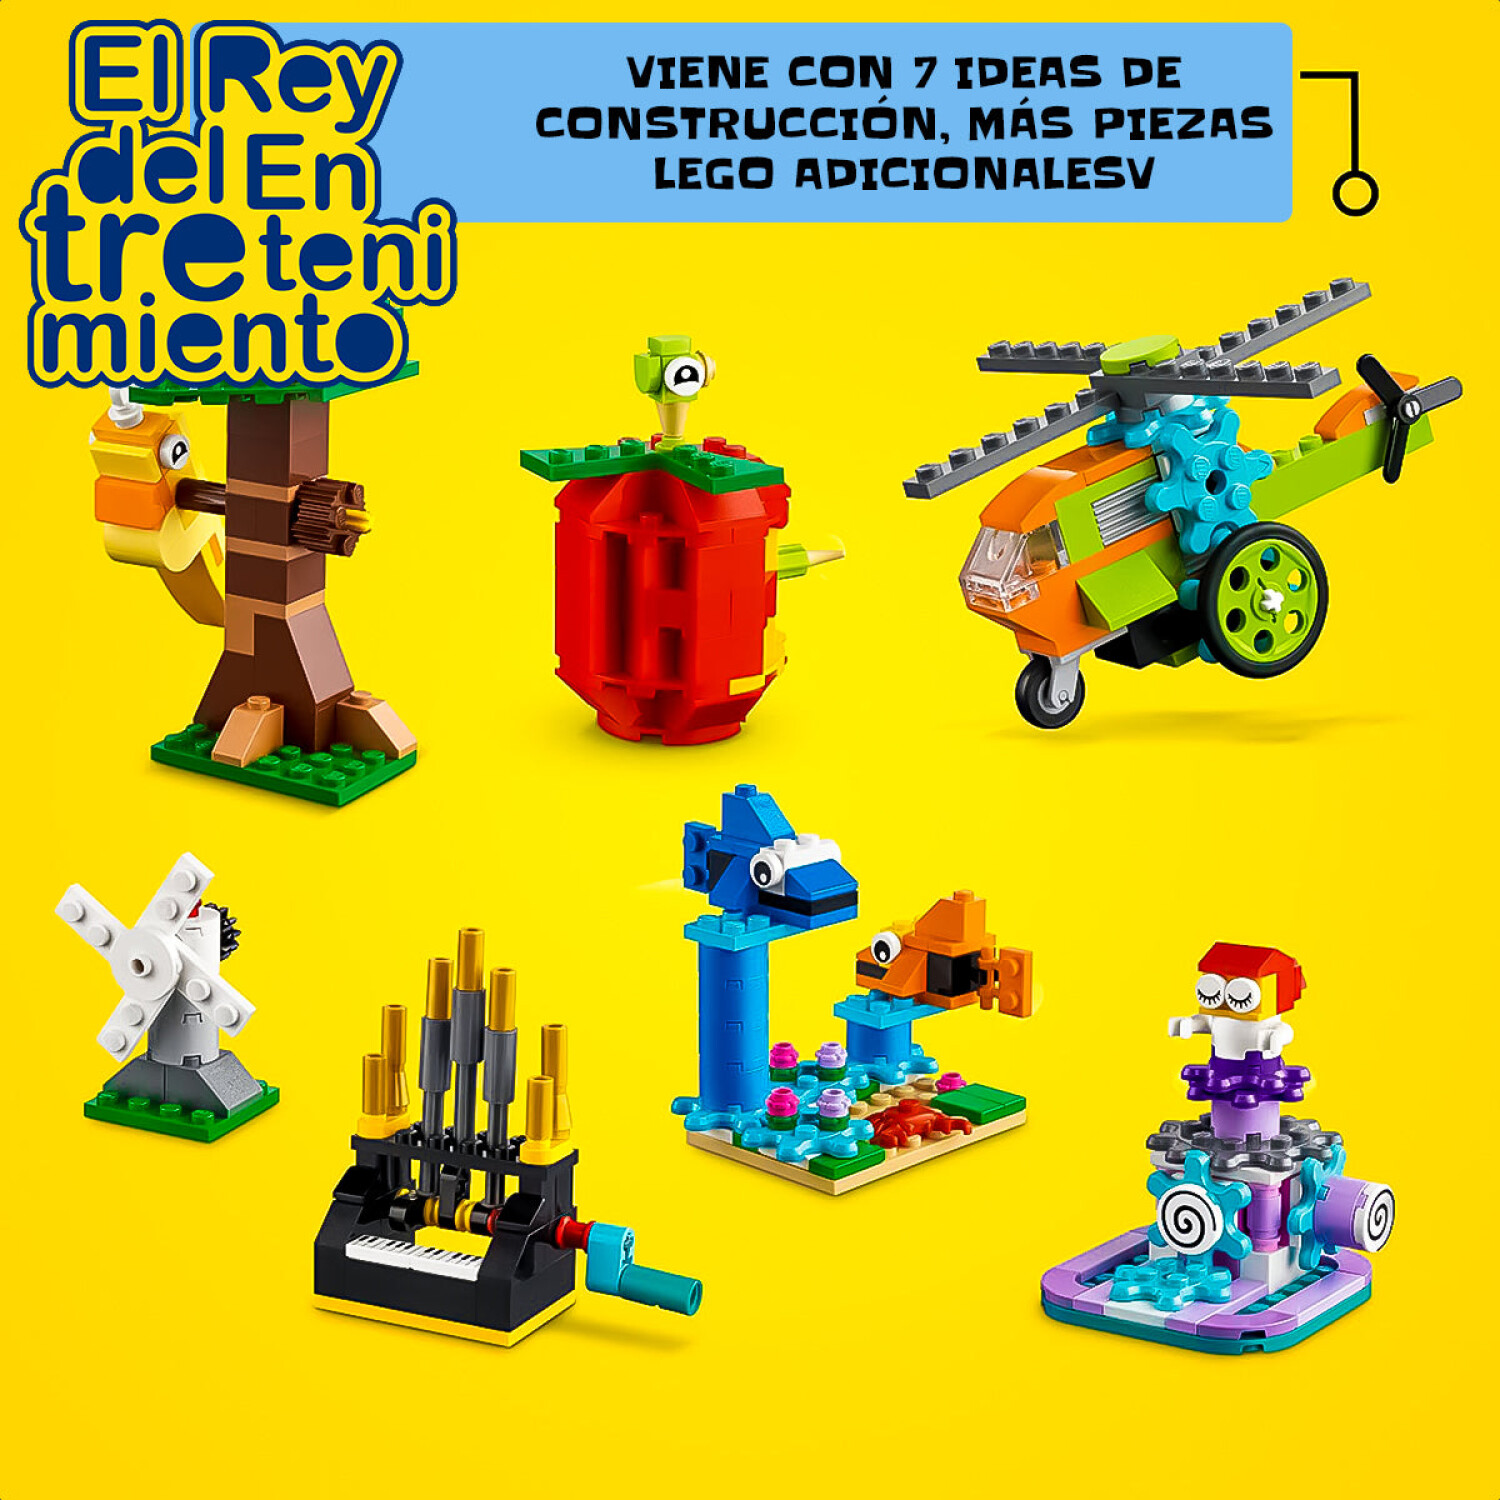 Lego Caja Creativa Classic Juego Encastre Colores - Bricks Creativos — El  Rey del entretenimiento